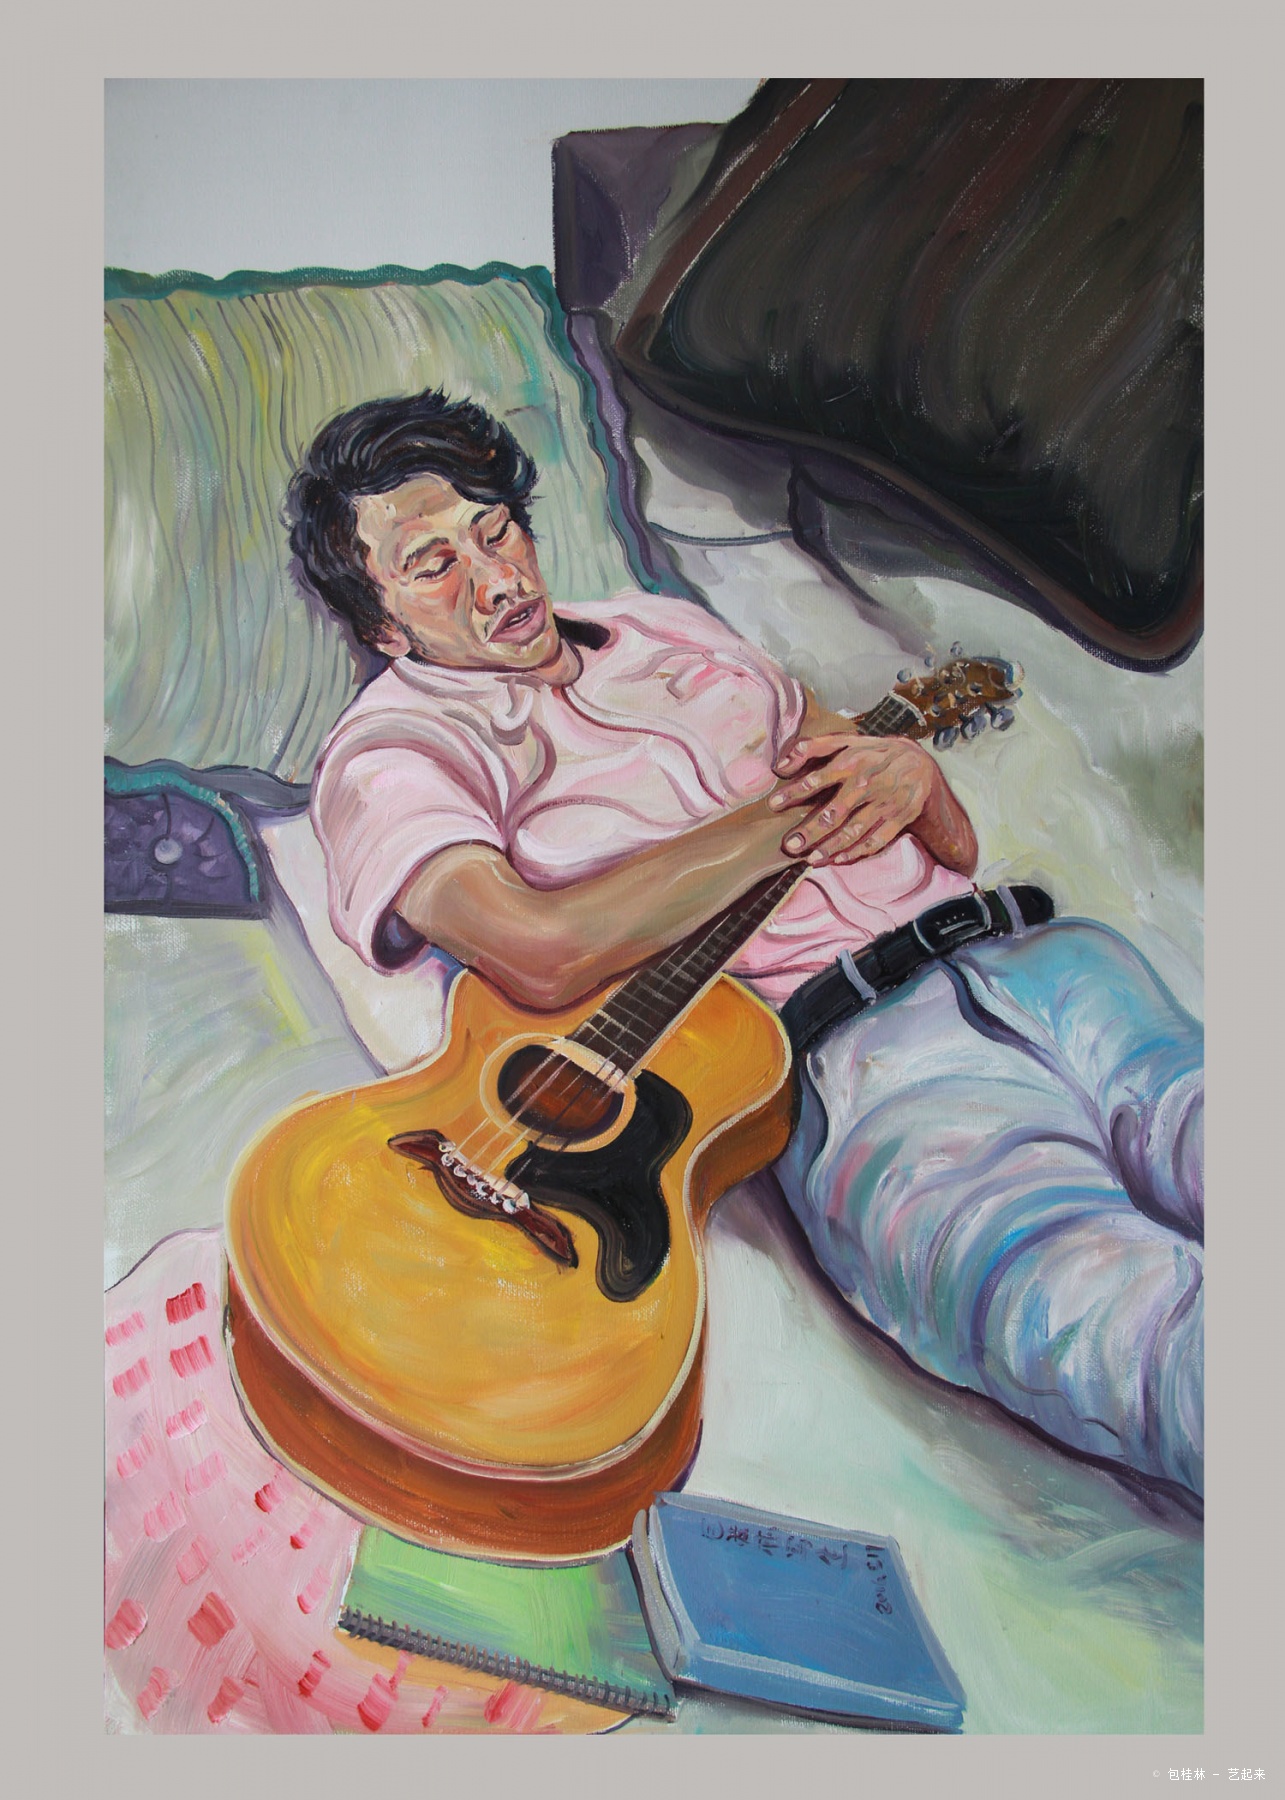 抱吉他午休的男子,包桂林, 2017年布面油画 